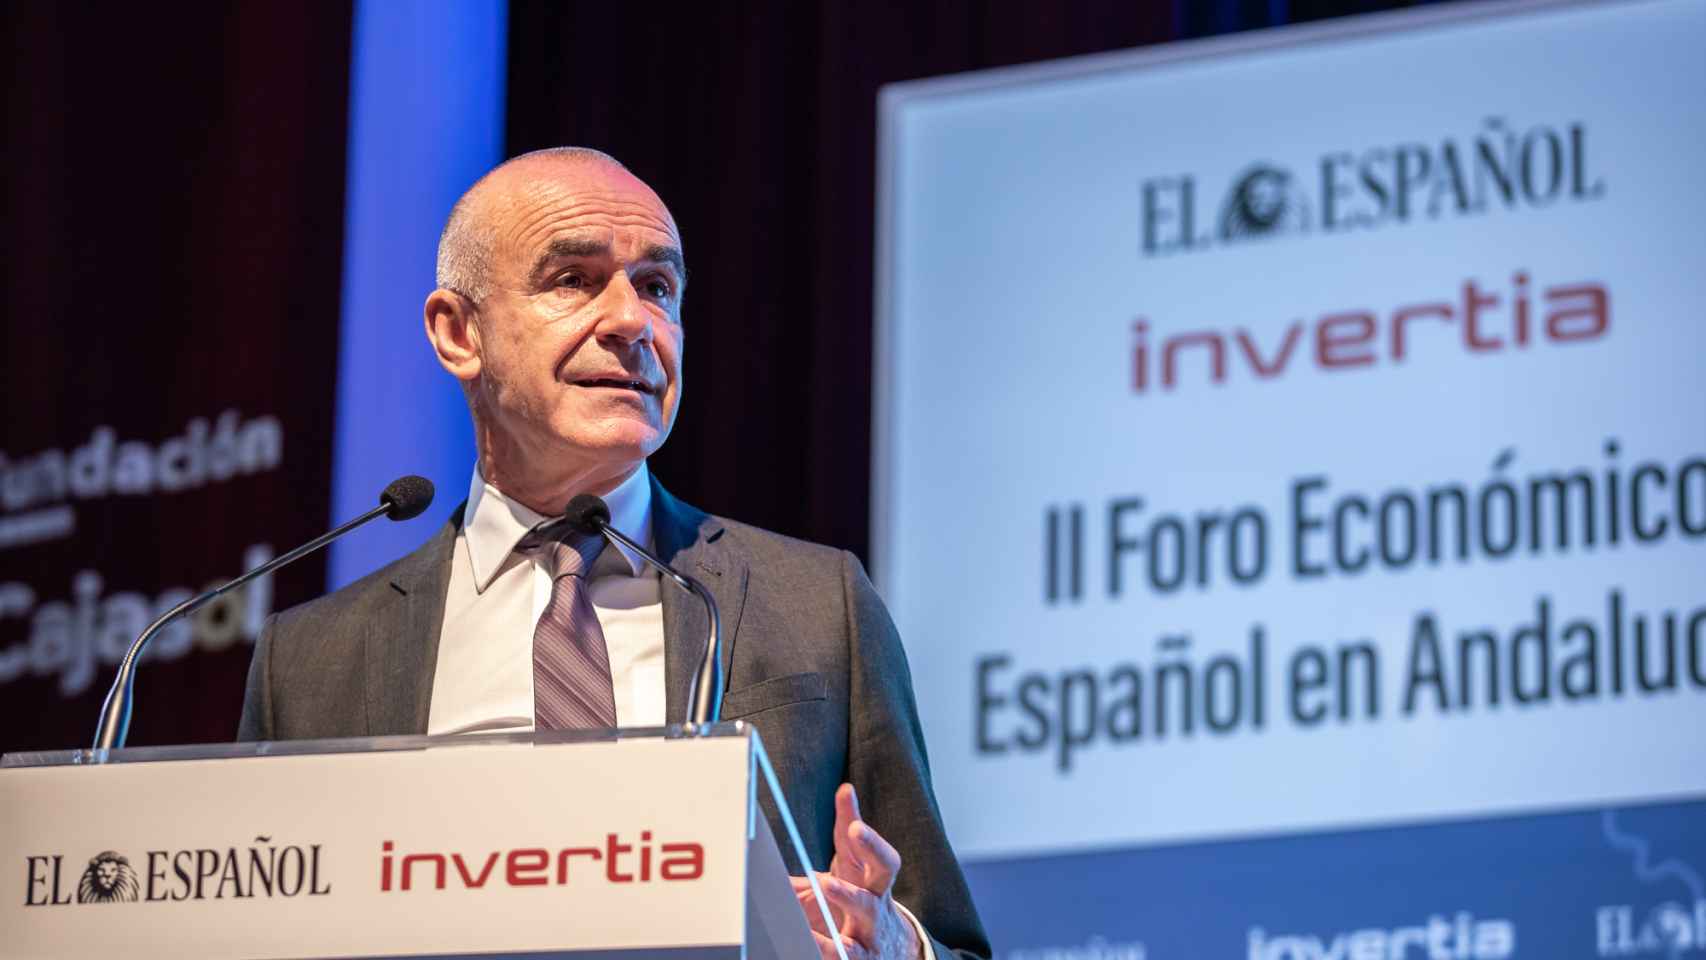 Segunda jornada del II Foro Económico Español en Andalucía 'Andalucía ante la vuelta a la normalidad'